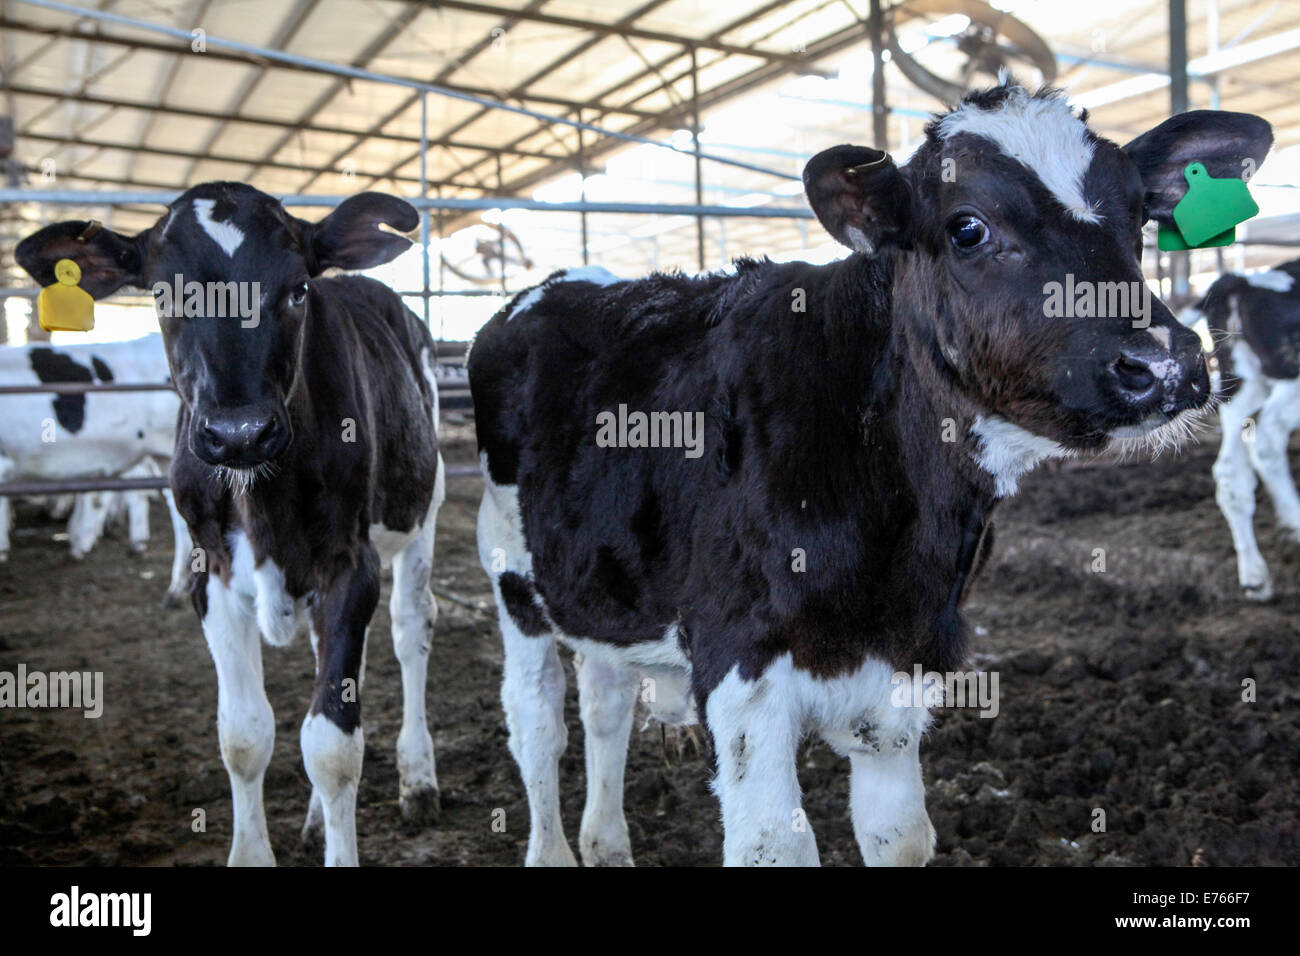 Les jeunes veaux dans un stylo à une ferme laitière. Photographié en Israël Banque D'Images